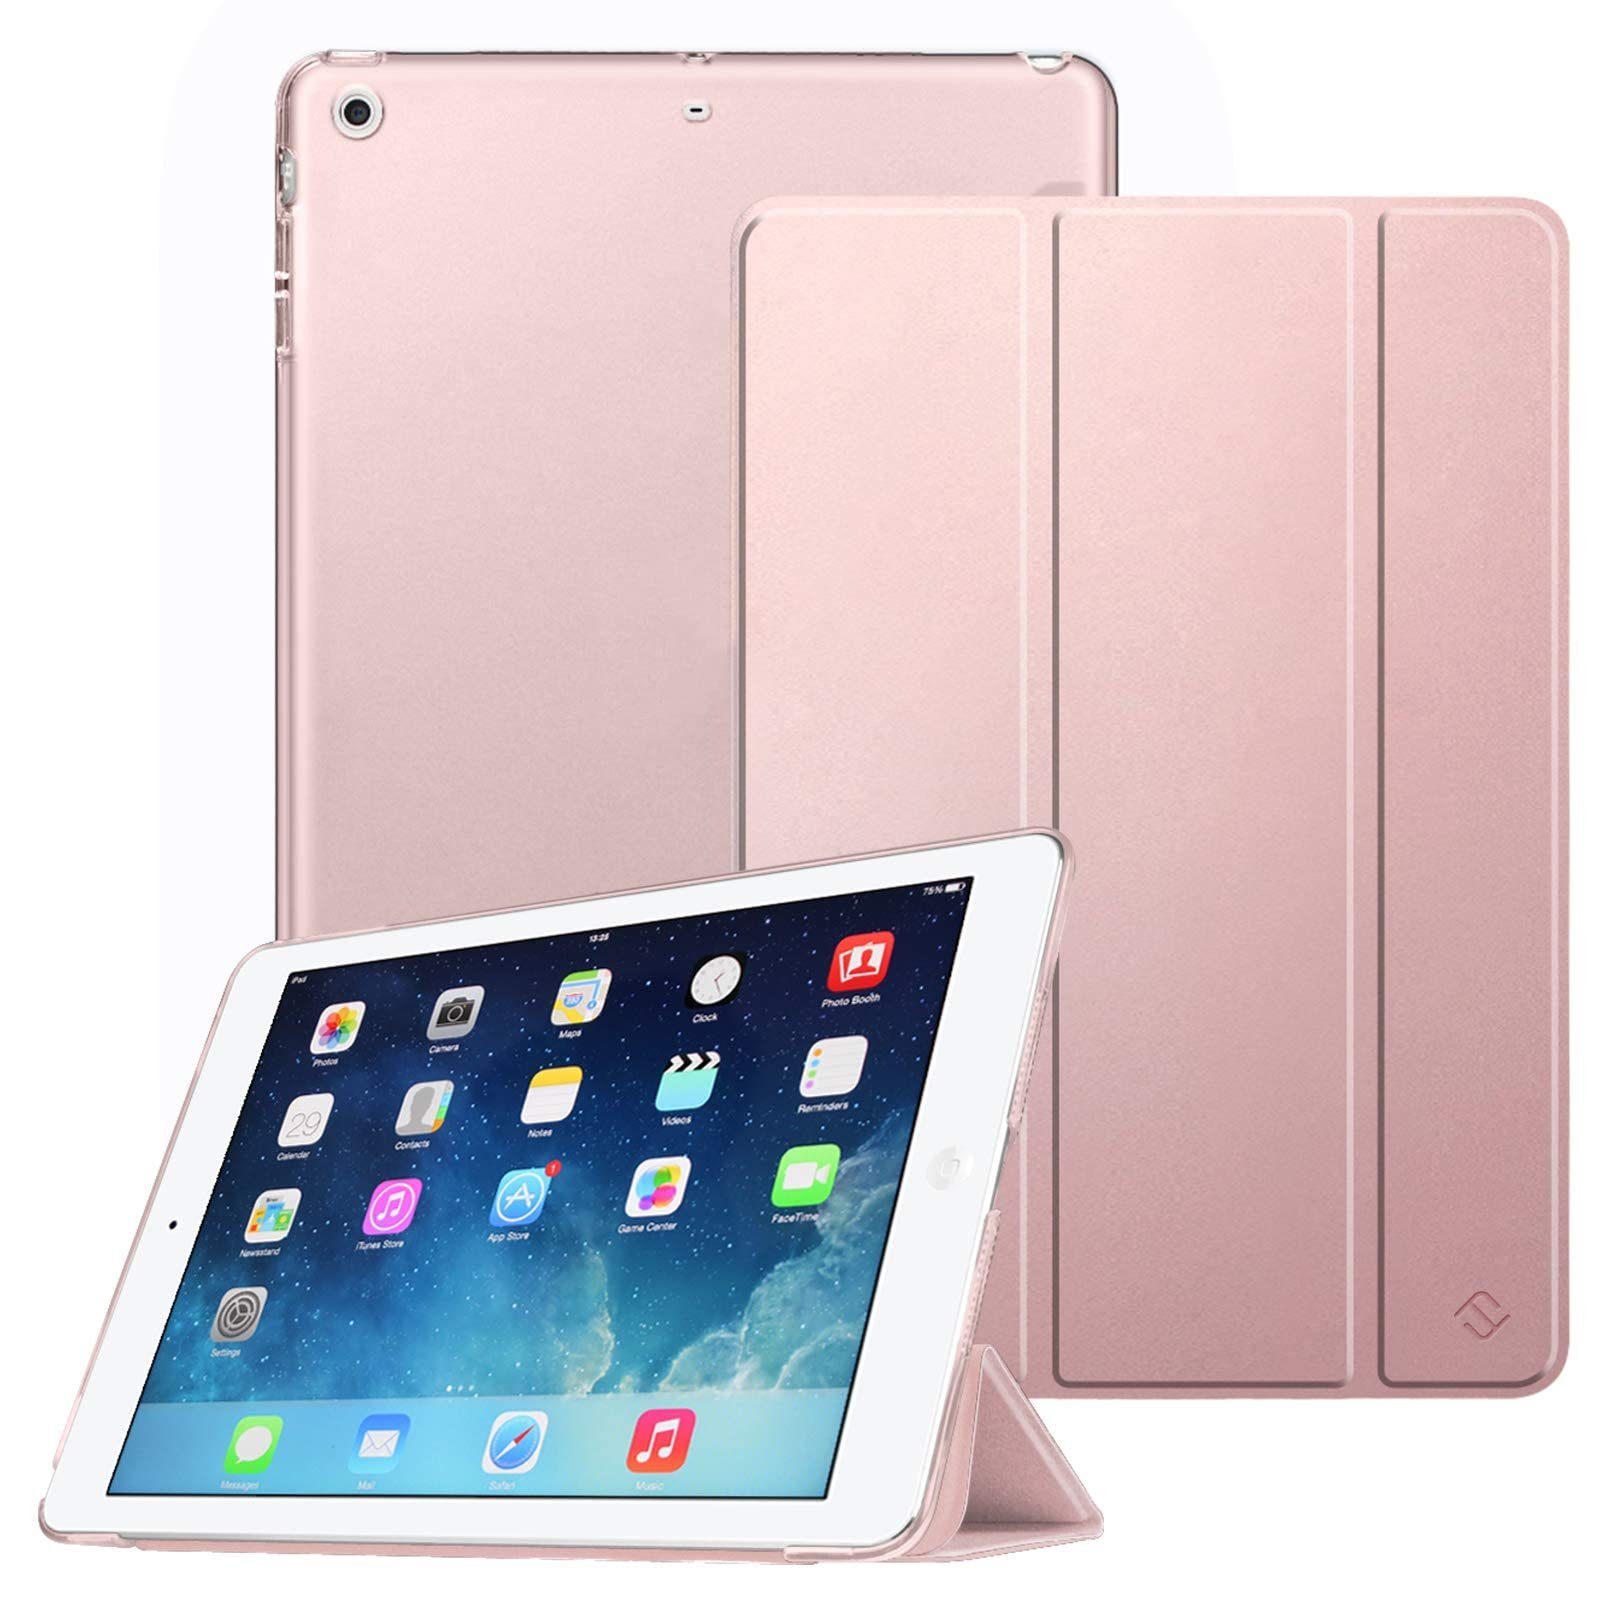 Fintie Tablet-Hülle für iPad Air 2 (2014 Modell) / iPad Air (2013 Modell),  Ultradünne Superleicht Hülle mit Transparenter Rückseite Abdeckung